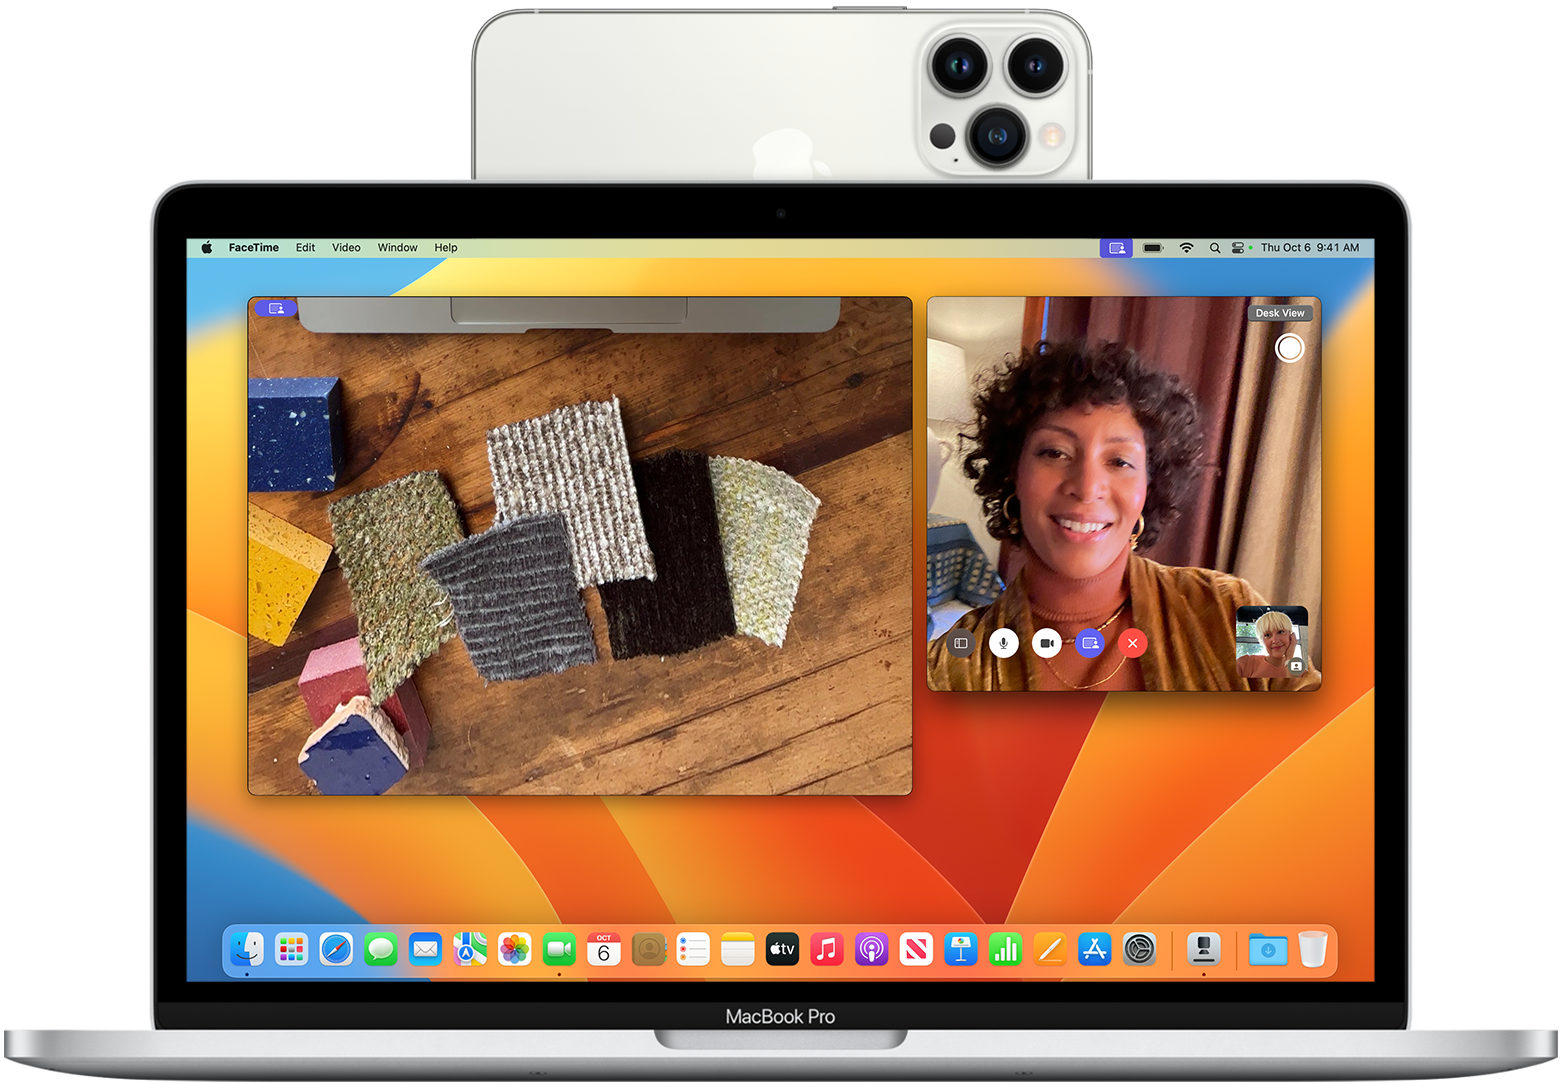 iPhone montado sobre Macbook Pro funcionando como webcam gracias a Continuity Camera.